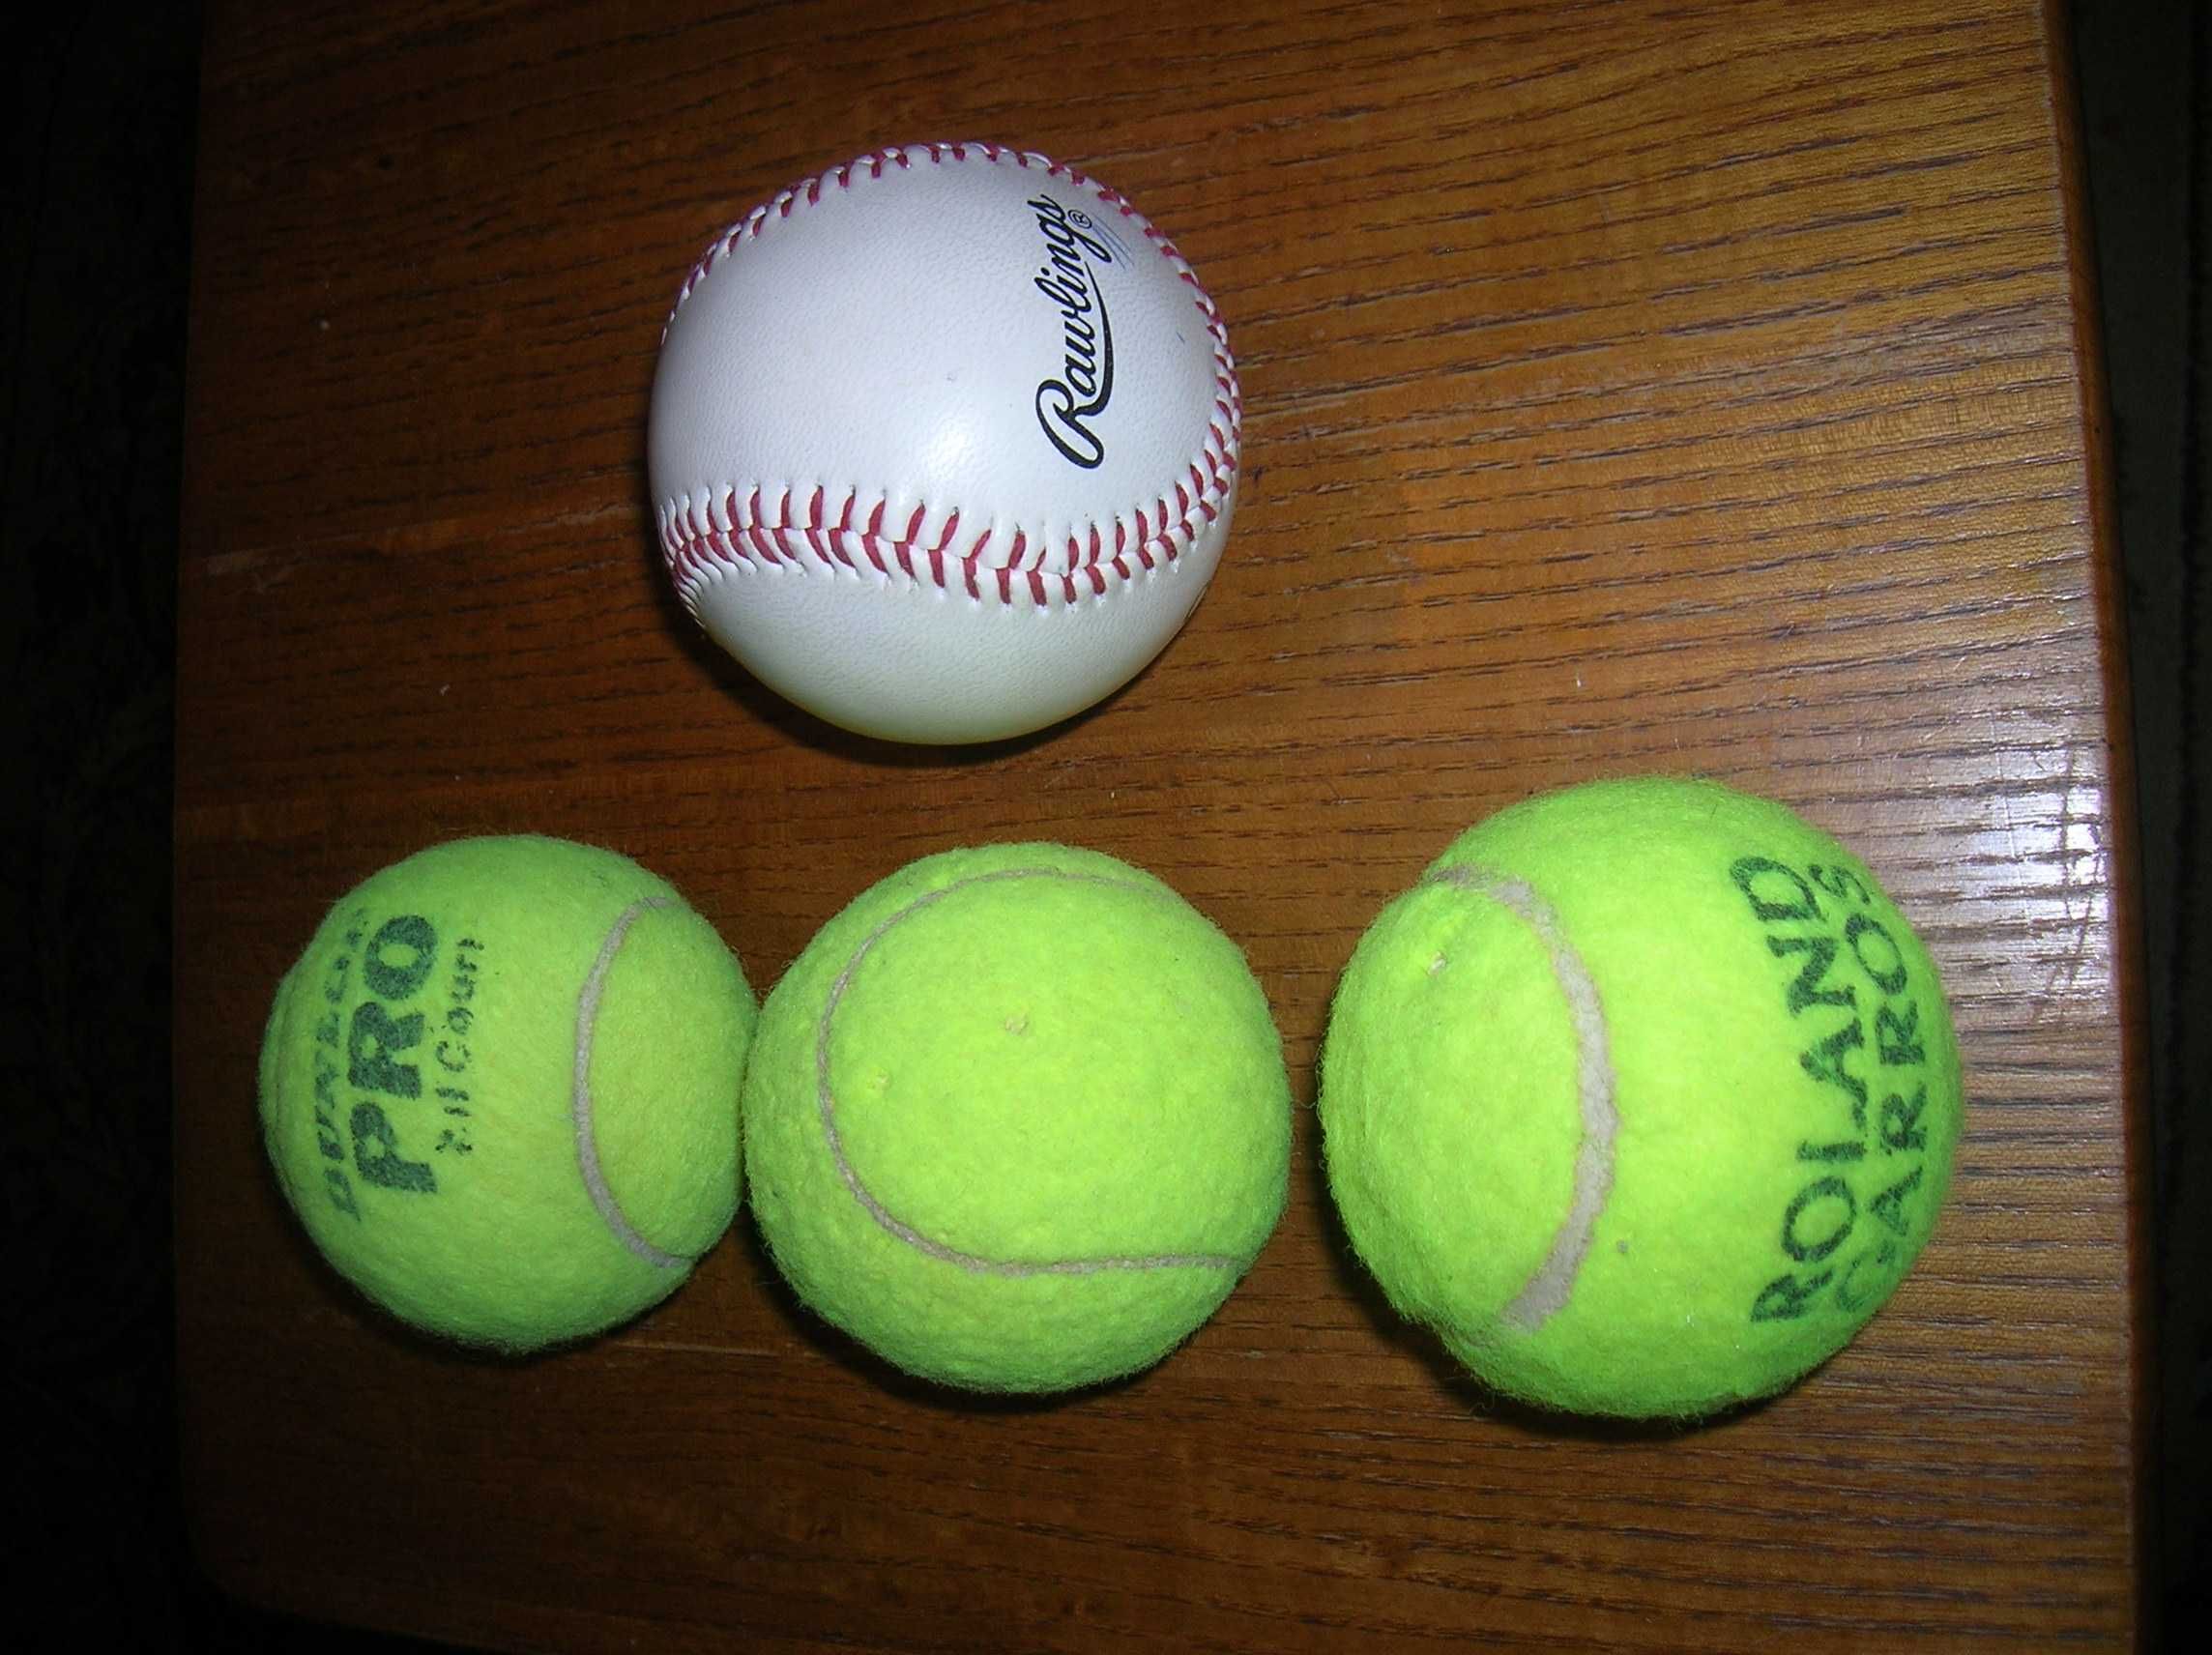 Теннисные мячики диаметр 7см разных фирм и мяч для бейсбола кожаный